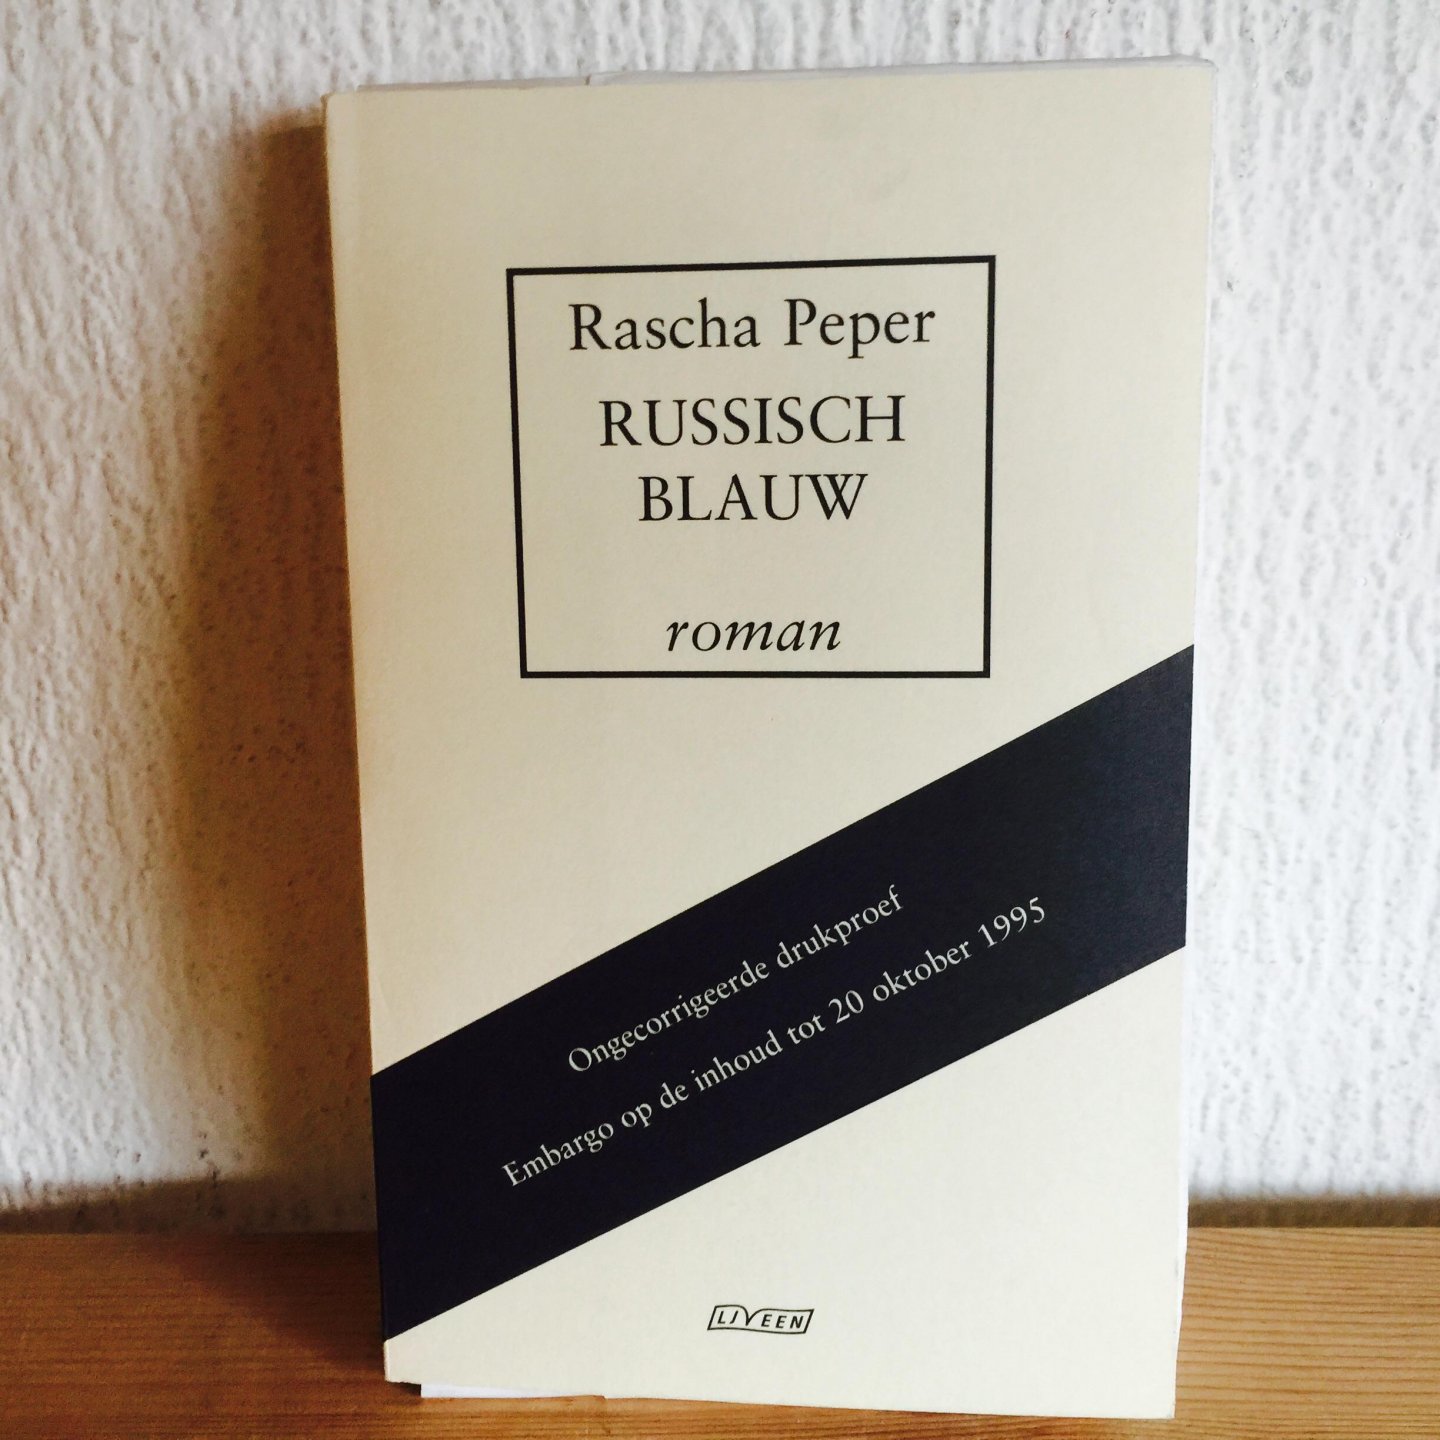 Rascha Peper - Russisch Blauw , roman , Ongecorrigeerde drukproef, 1995